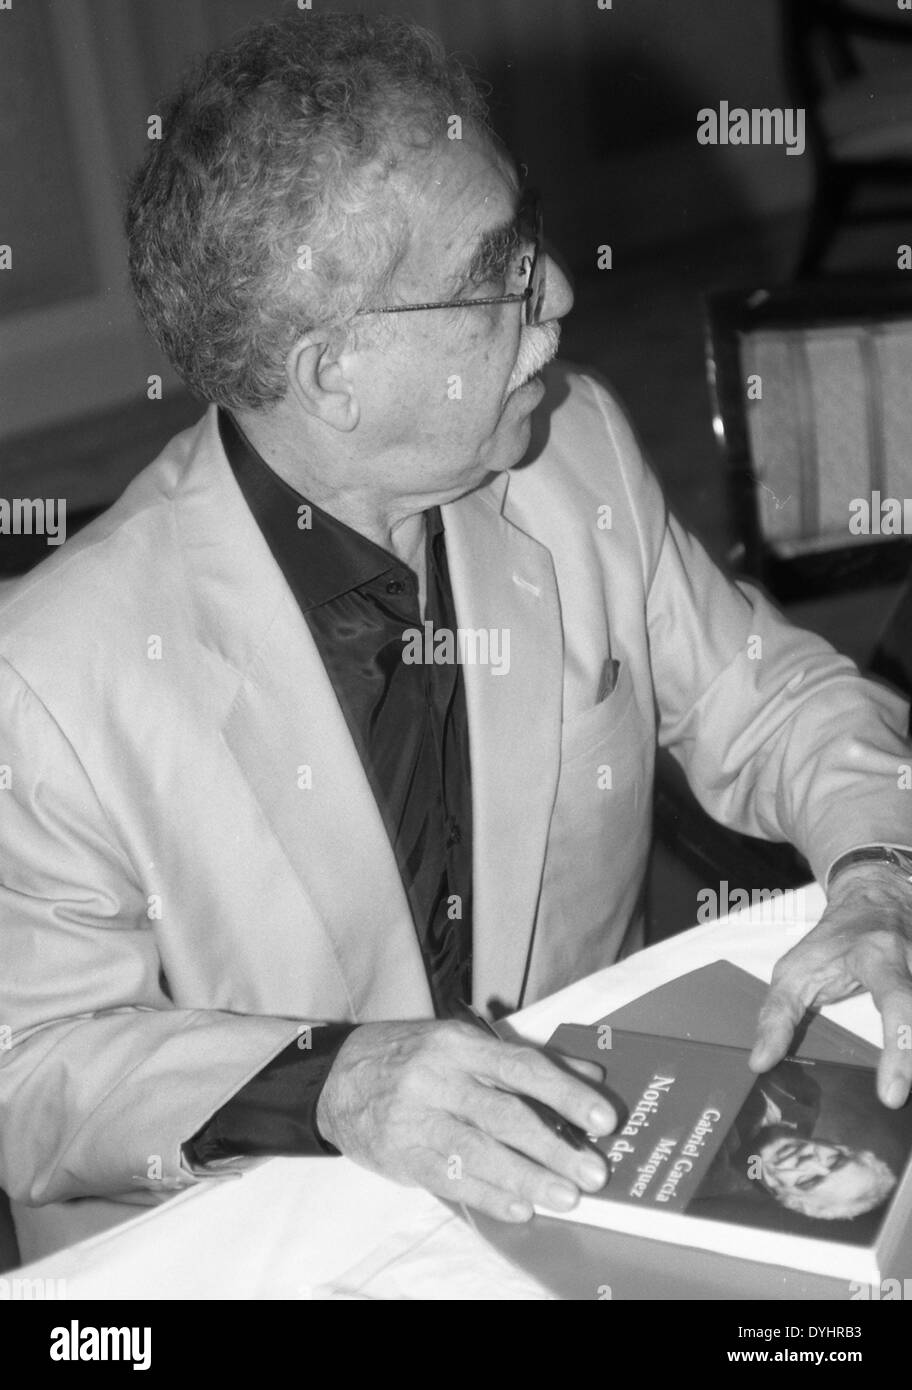 Los Angeles, California, EEUU. 18 abr, 2014. Foto de archivo. 1982 Premio Nobel de Literatura, Gabriel García Márquez, el novelista colombiano cuyo Cien Años de Solituded lo estableció como un gigante de la literatura del siglo 20, murió el jueves, 17 de abril de 2014 en su domicilio en la Ciudad de México. Él era 87.ARMANDO ARORIZO. © Armando Arorizo/Prensa Internacional/ZUMAPRESS.com/Alamy Live News Foto de stock